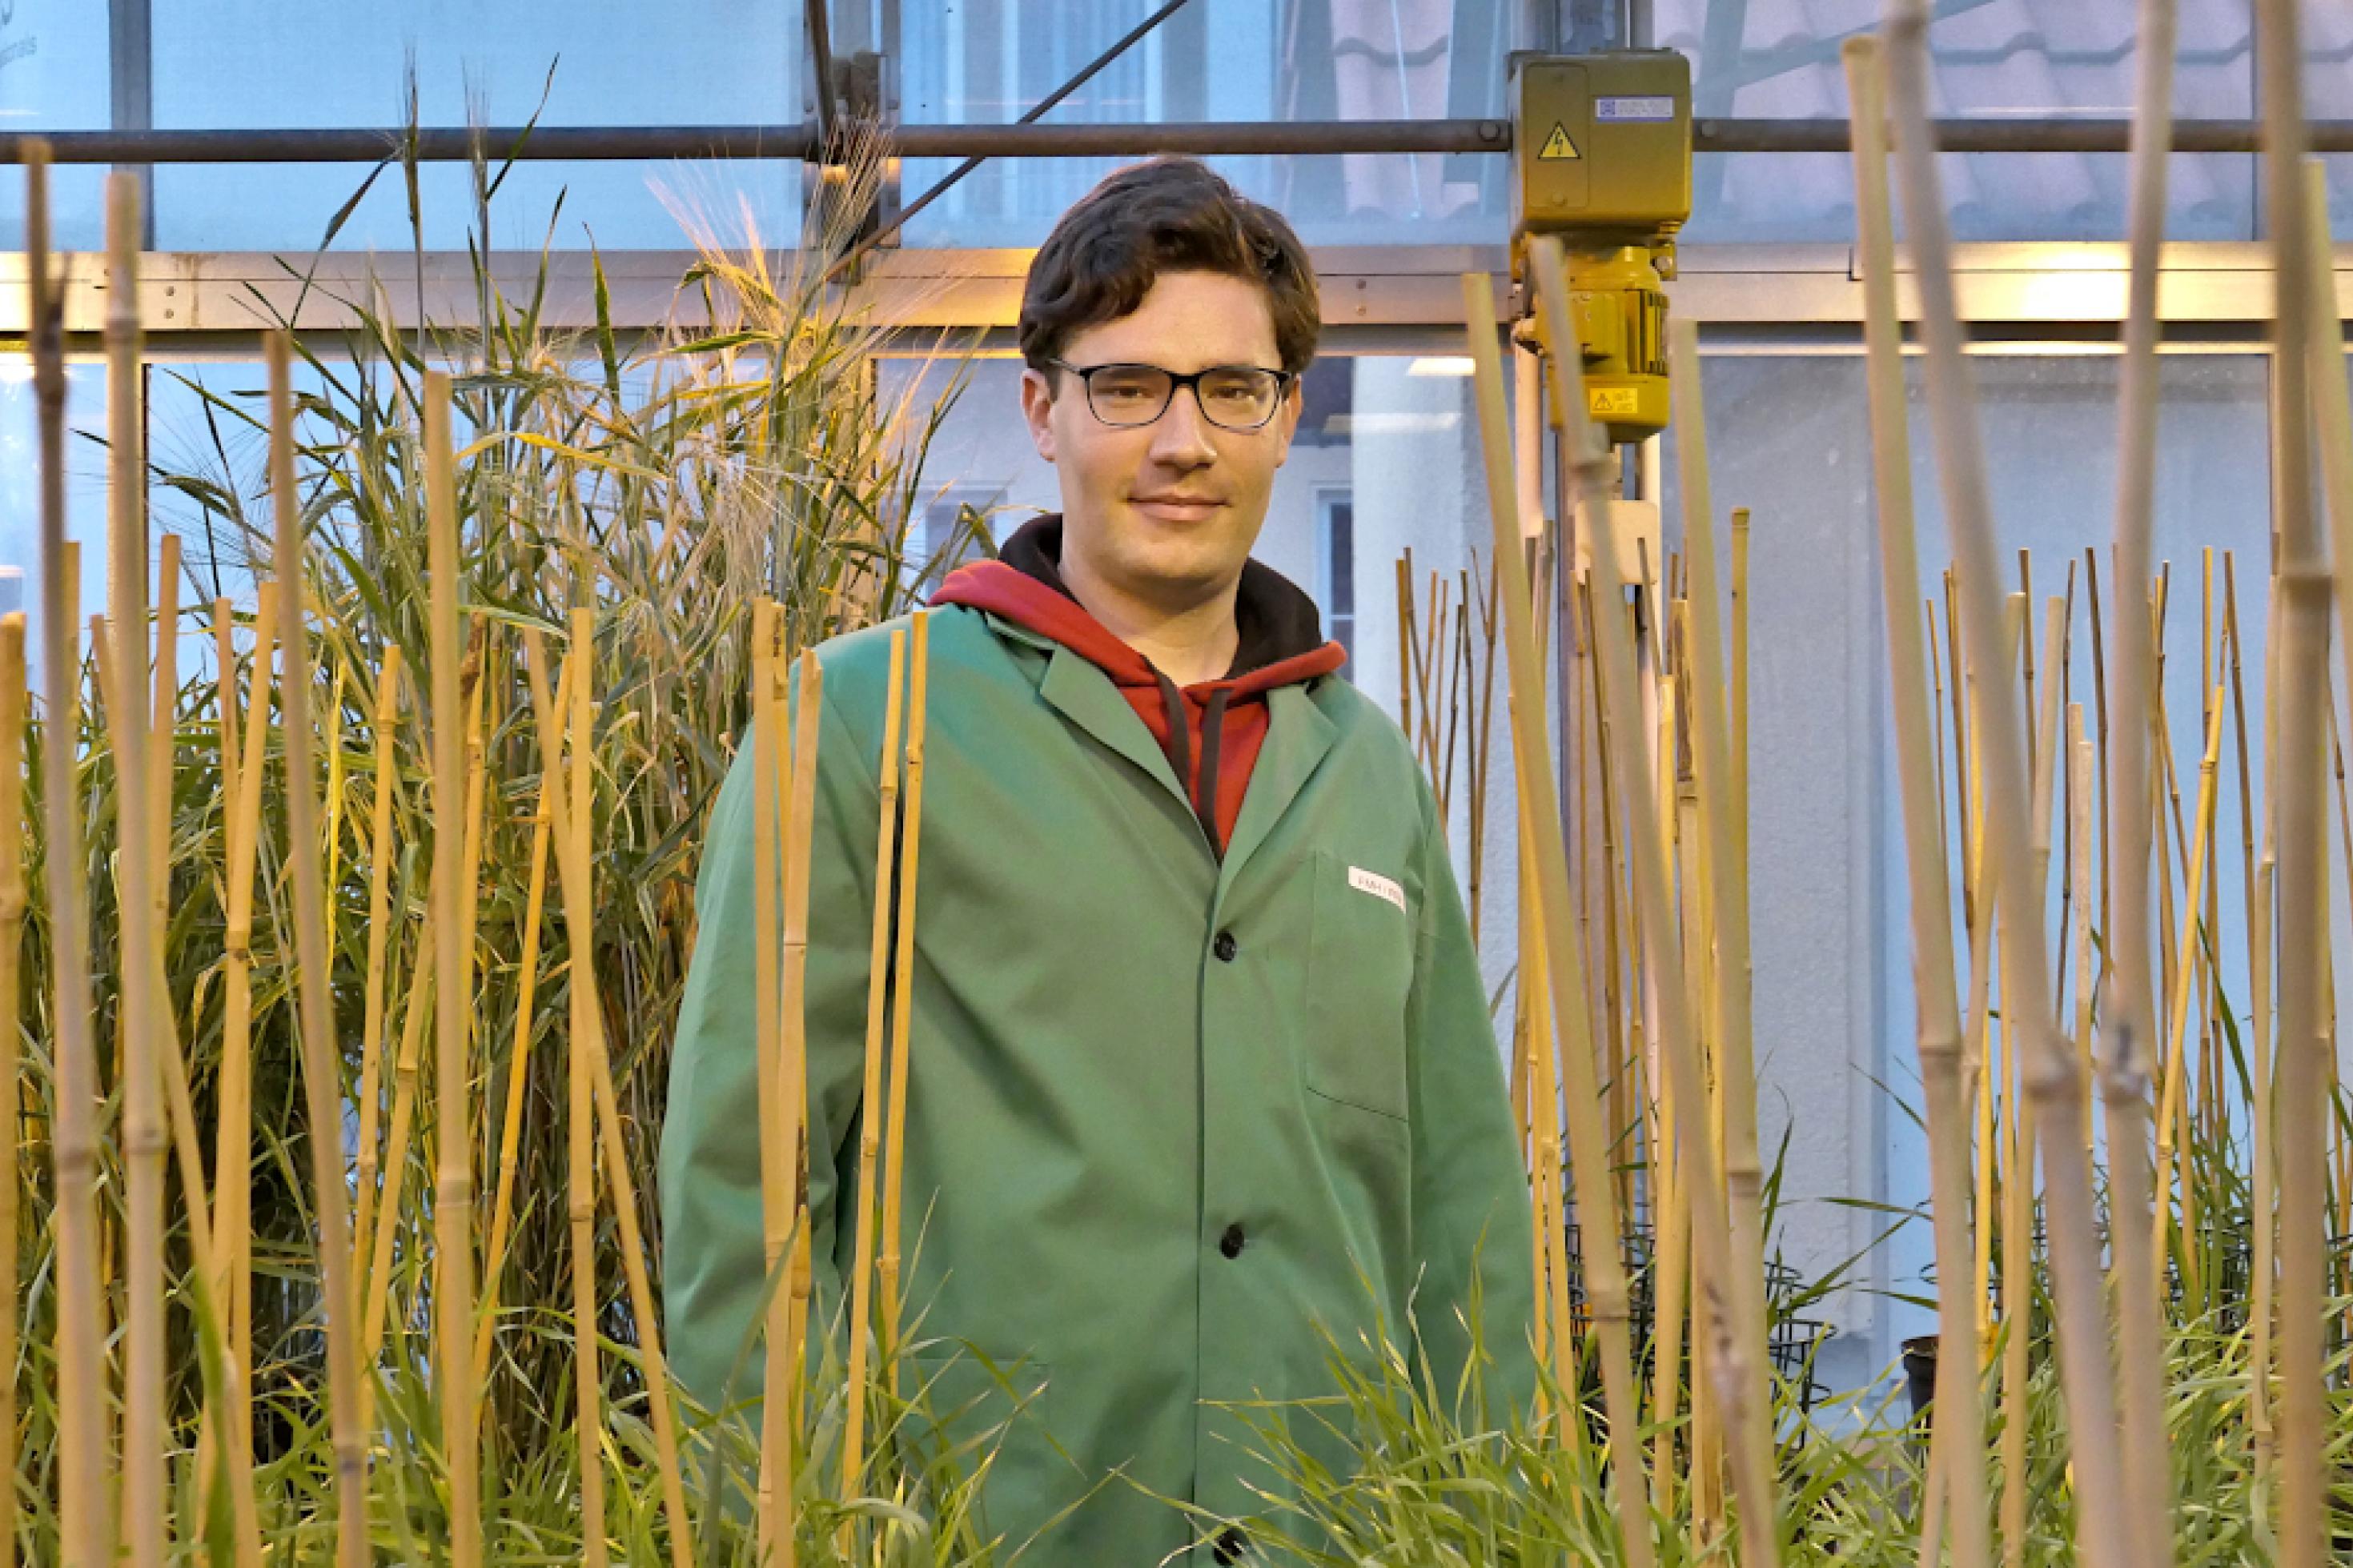 Robert Hoffie im grünen Kittel steht zwischen Getreidepflanzen, die einzeln mit dünnen Bambusstäben gestützt werden.